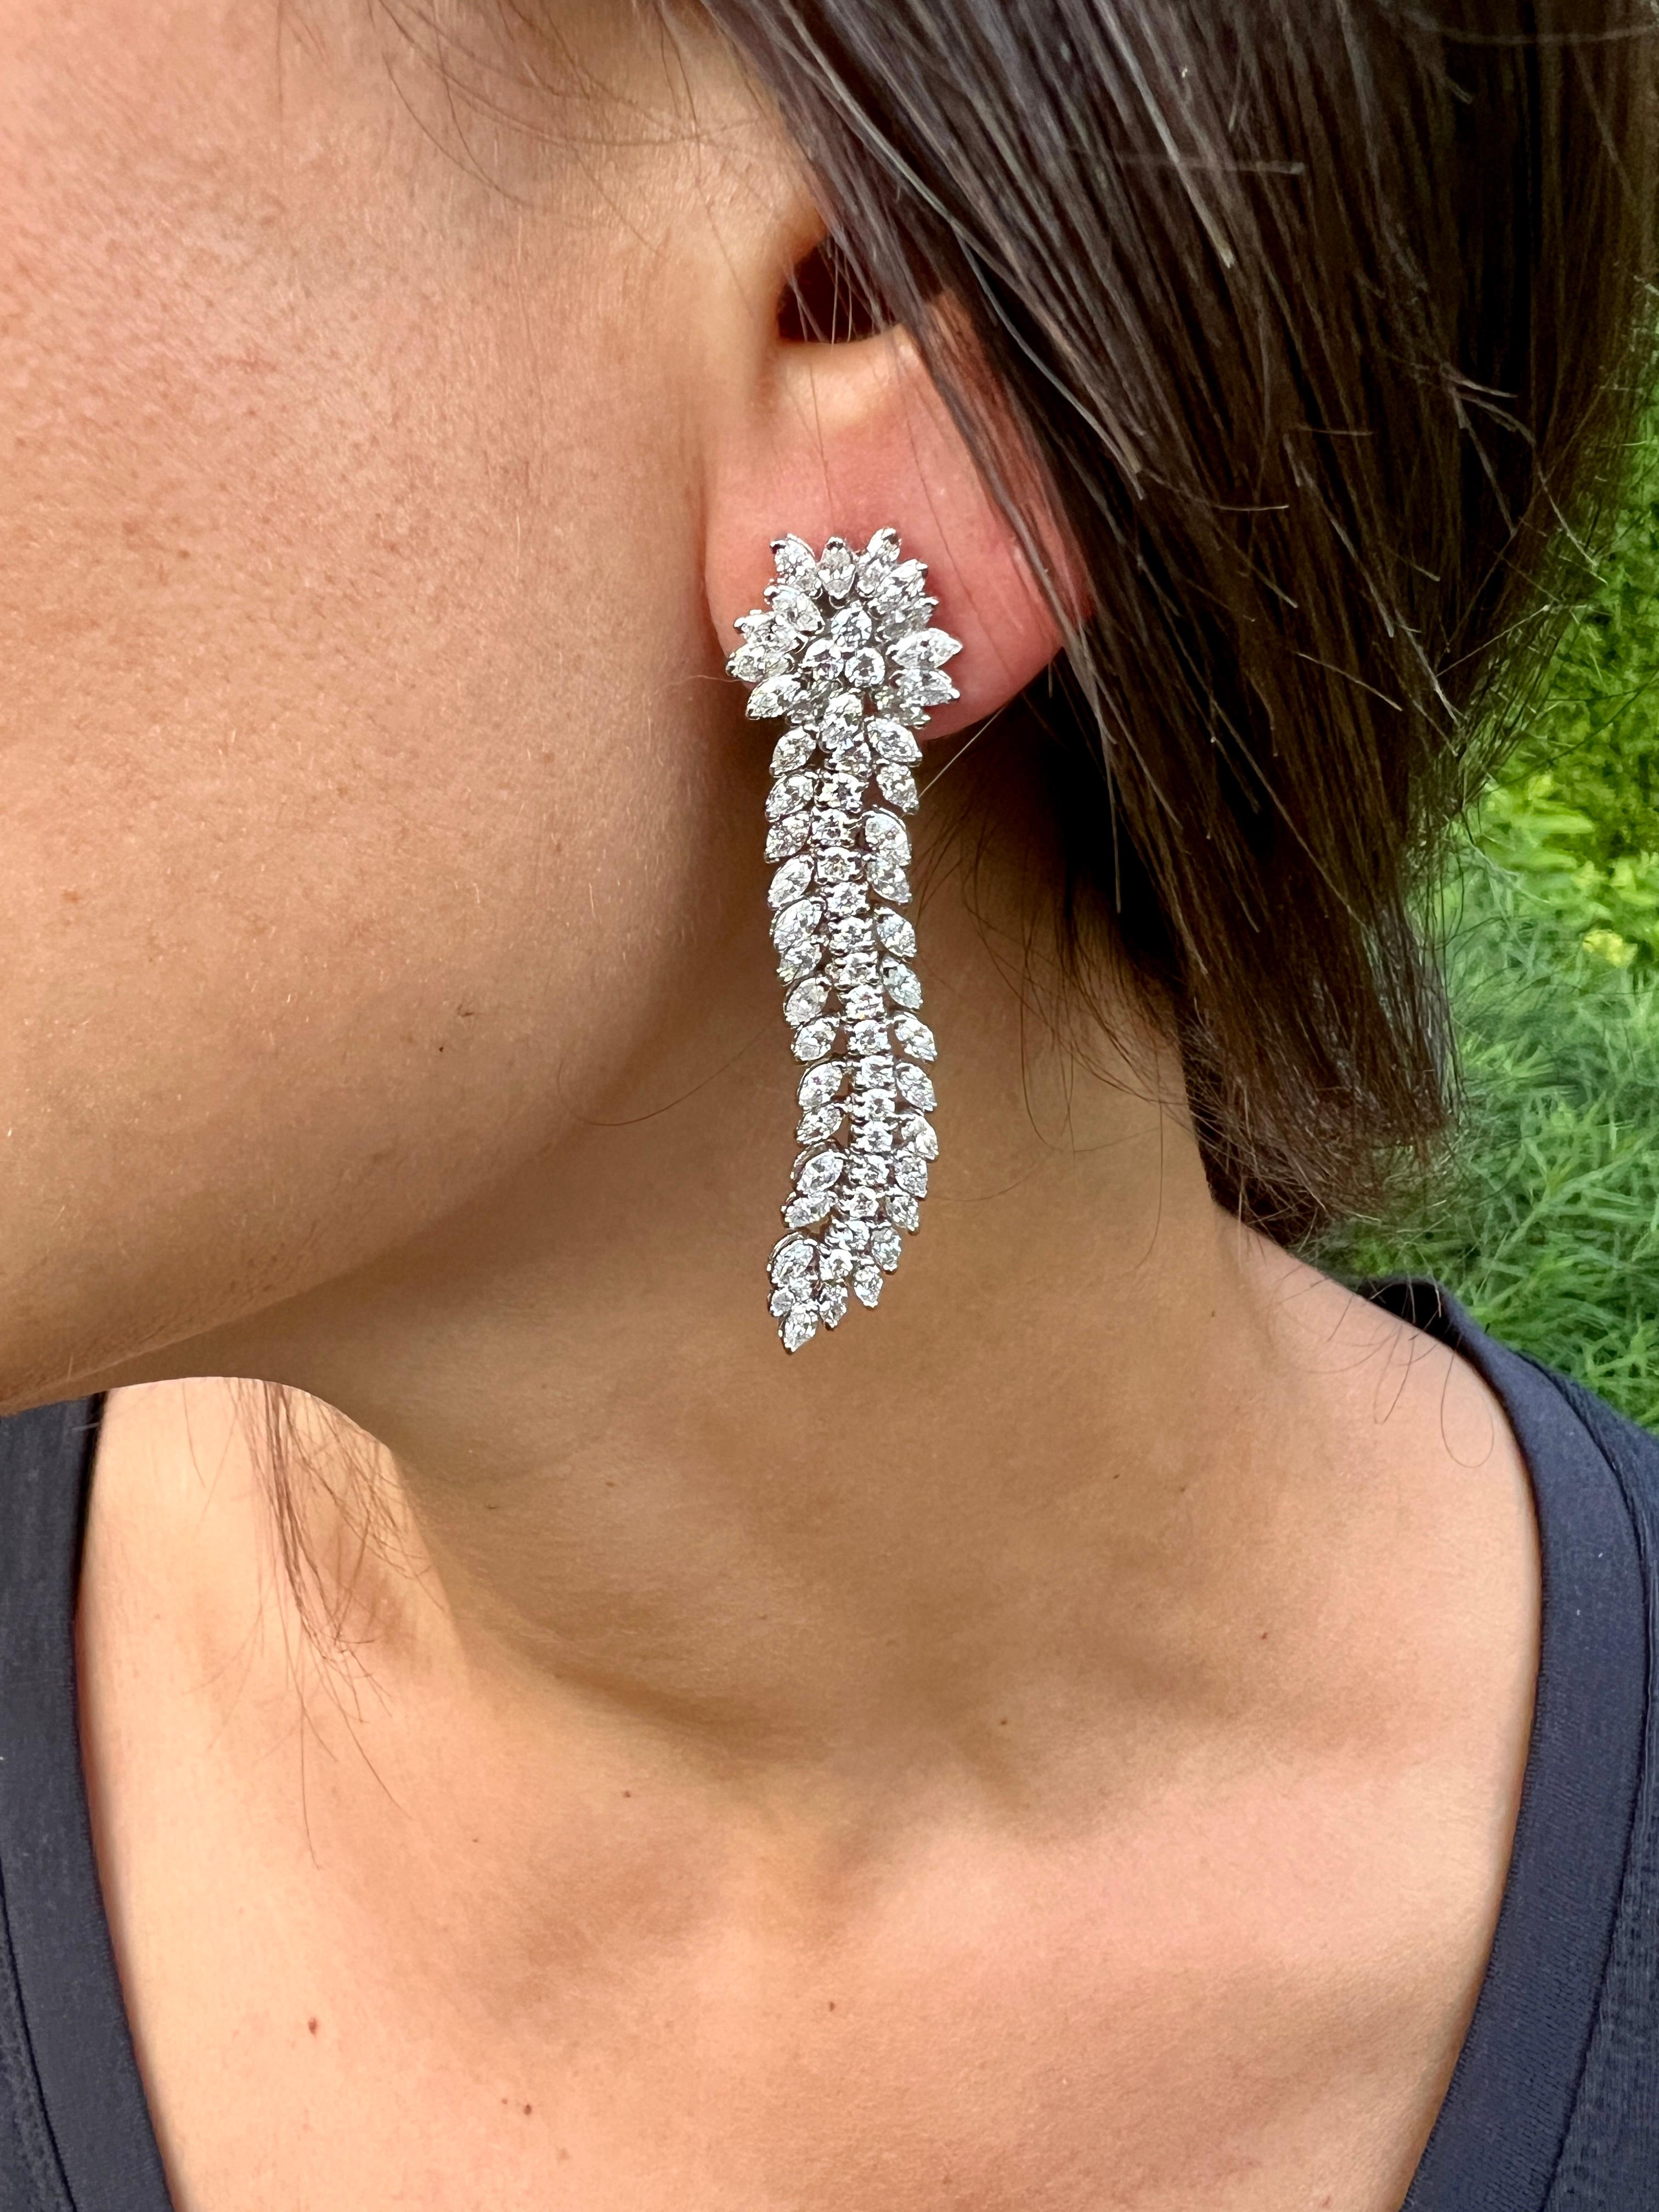 Sie suchen ein Paar Ohrringe, das Eleganz und Raffinesse ausstrahlt? Suchen Sie nicht weiter als Marquise und runde Diamant-Ohrringe! Diese atemberaubenden Ohrringe sind perfekt für jede Gelegenheit, egal ob Sie sich für eine formelle Veranstaltung